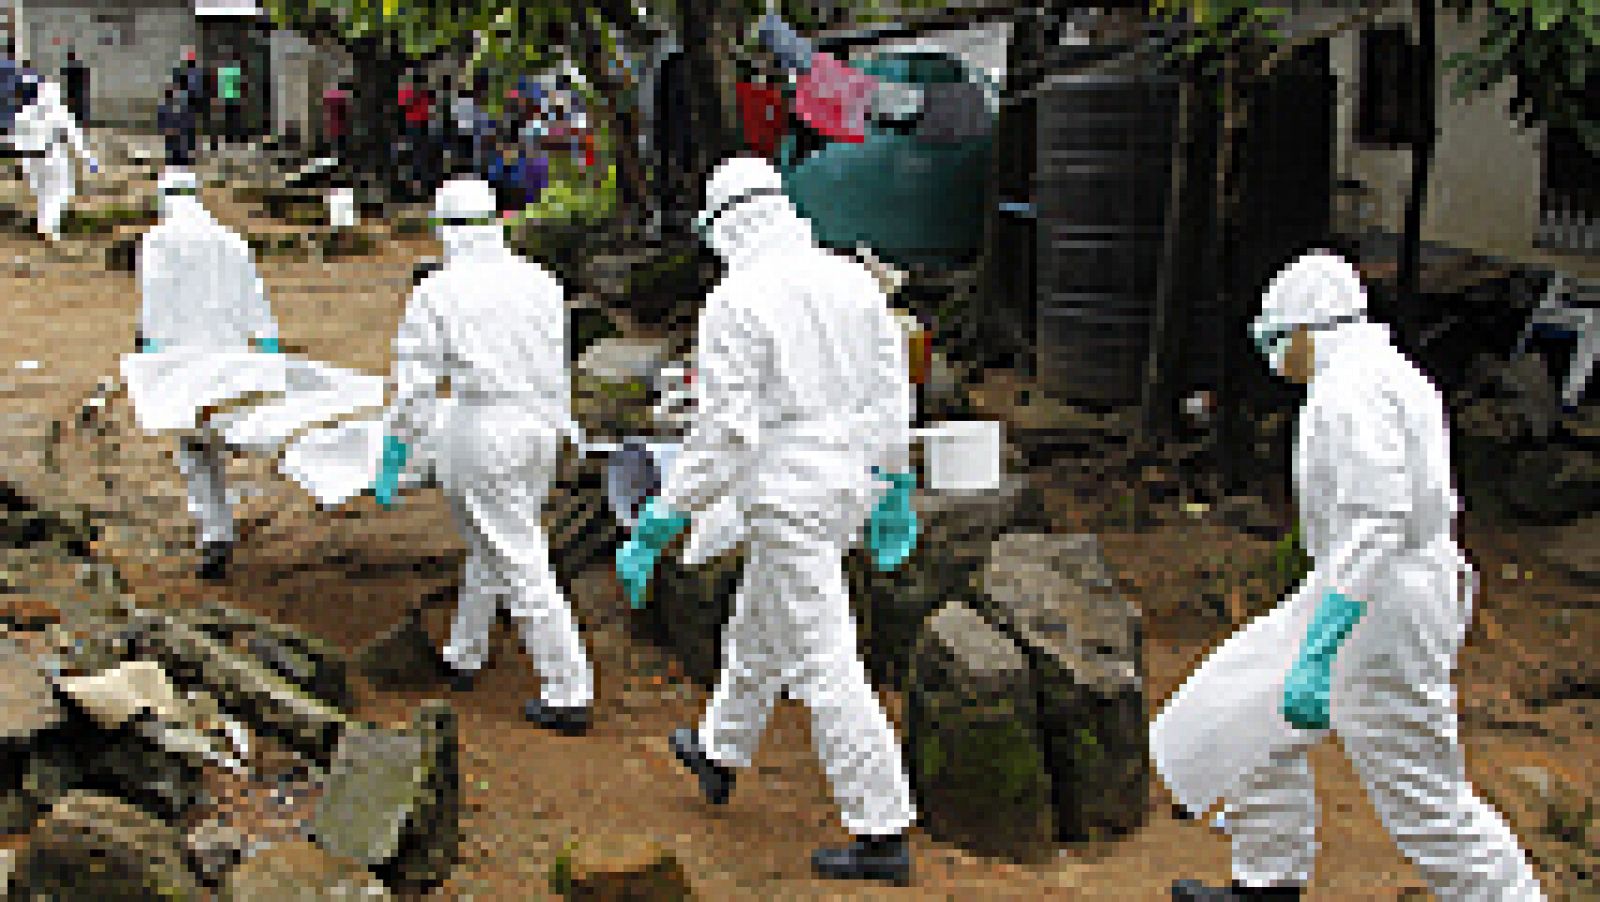 Siete meses después de conocerse los primeros casos de ébola en África, la última cifra de muertos se acerca a los 4.000 